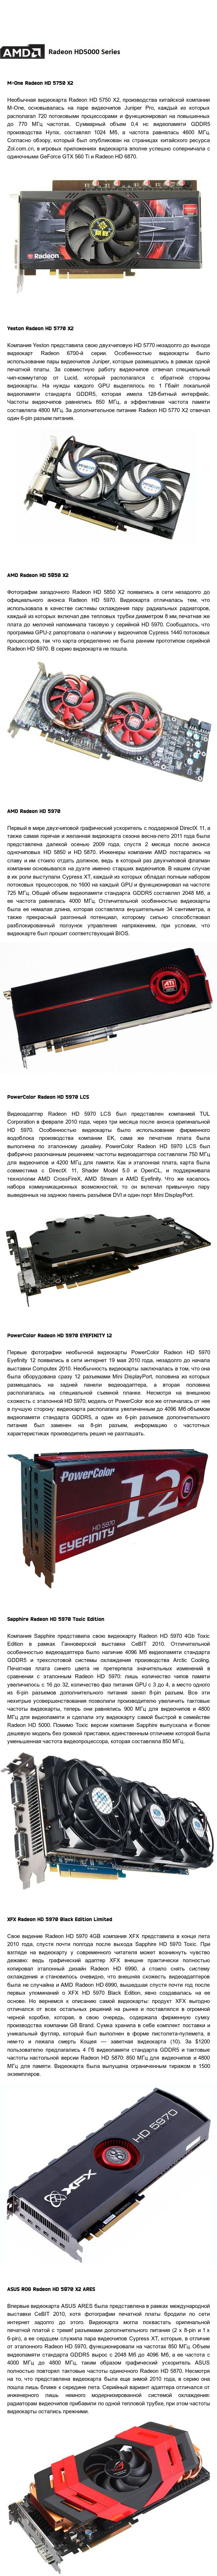  -GPU .  3.4:  Radeon  5000  6000 Amd Radeon, Ati radeon, Crossfire,  , , AMD, 